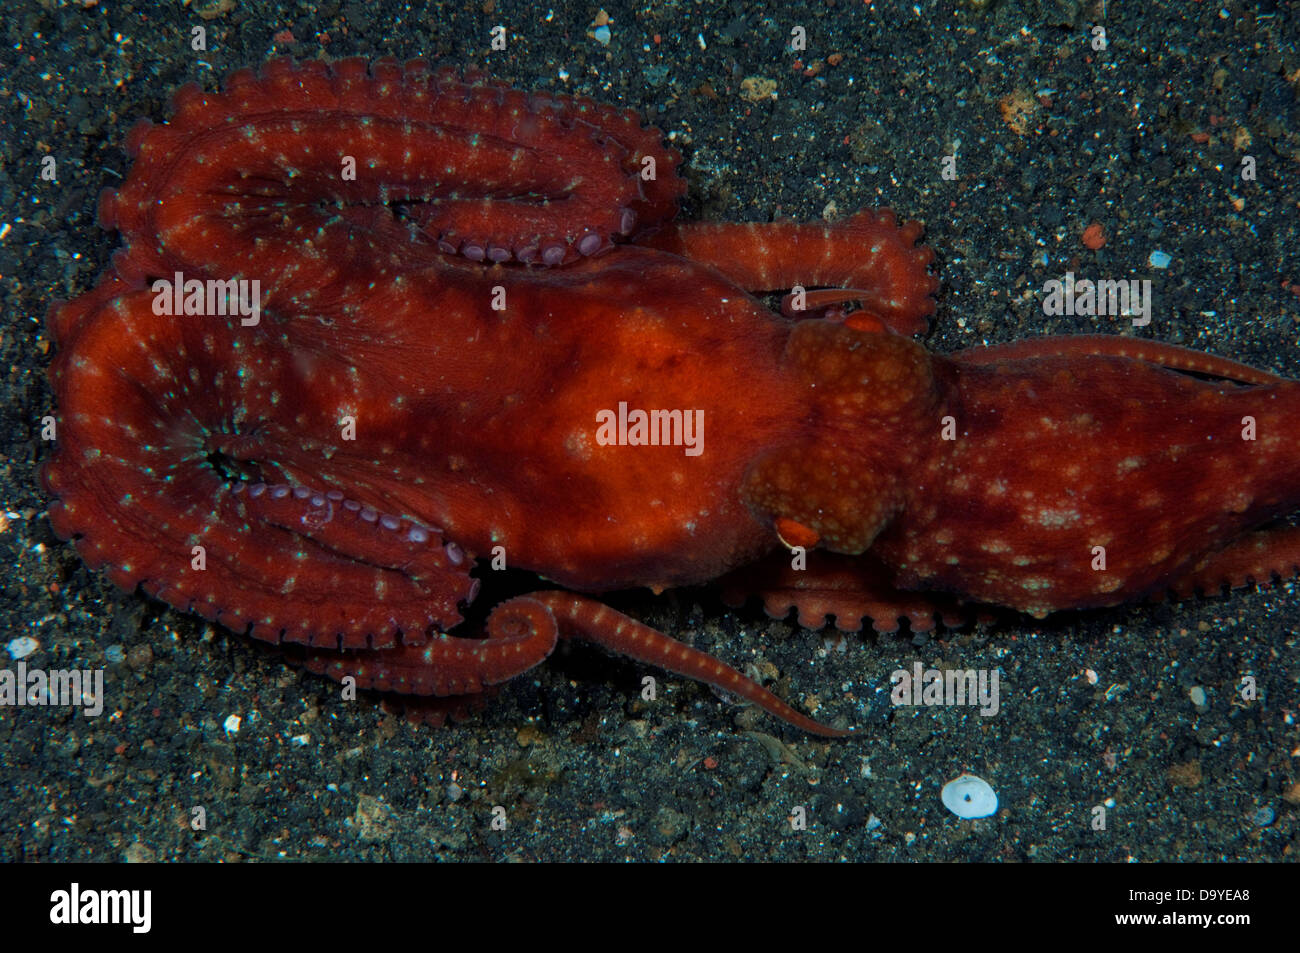 La noche estrellada el pulpo (Octopus luteus) en arena negra, estrecho de Lembeh, Sulawesi, Indonesia Foto de stock